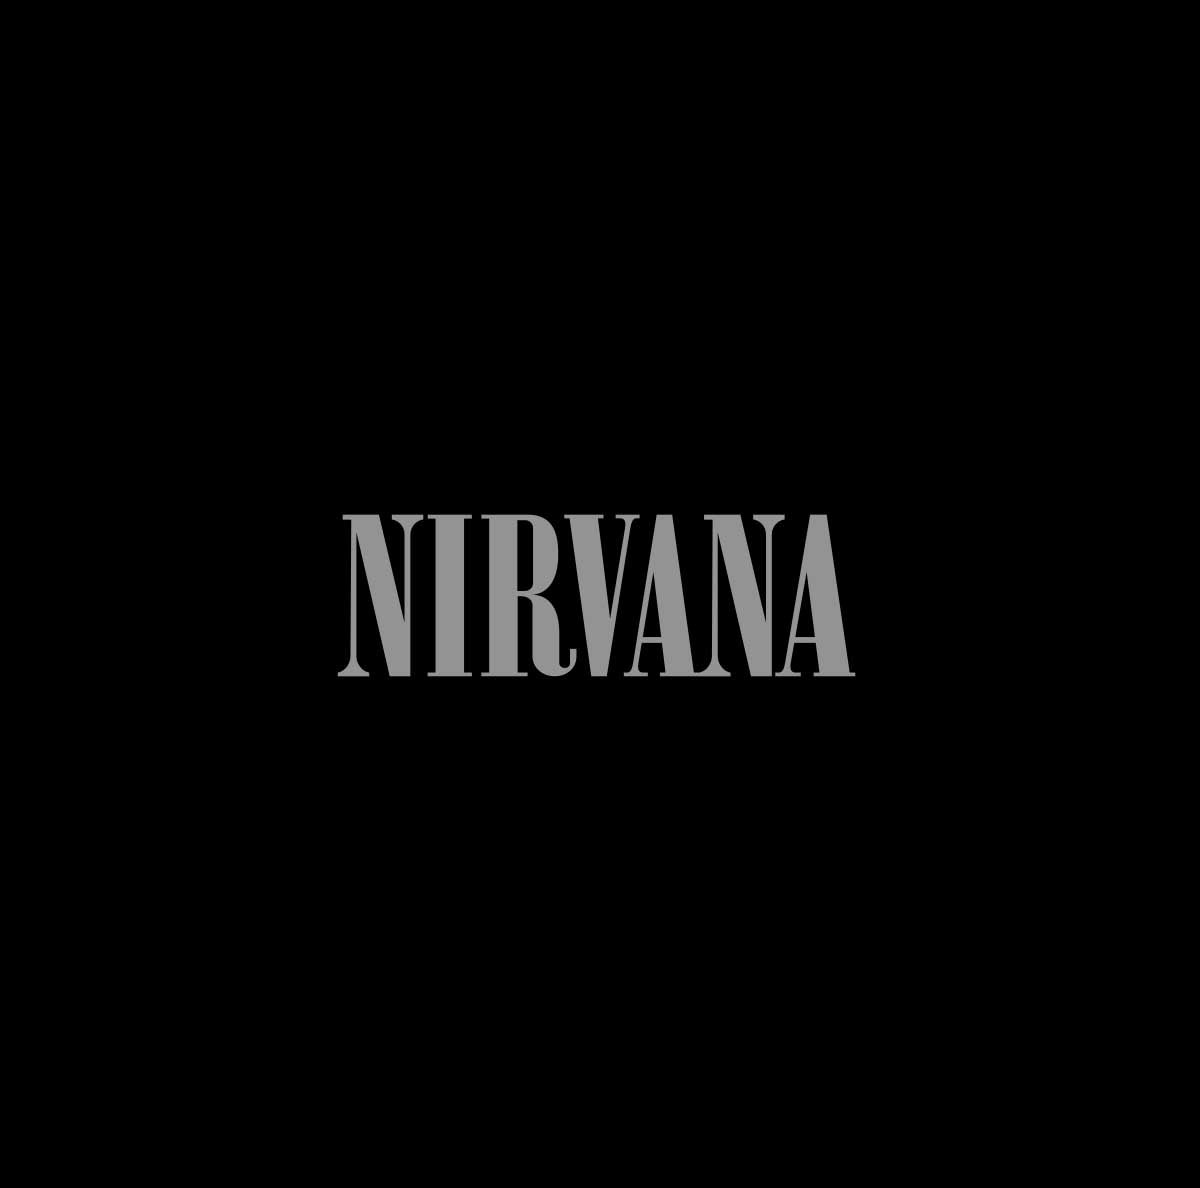 Nirvana "Nirvana" 180g Vinyl